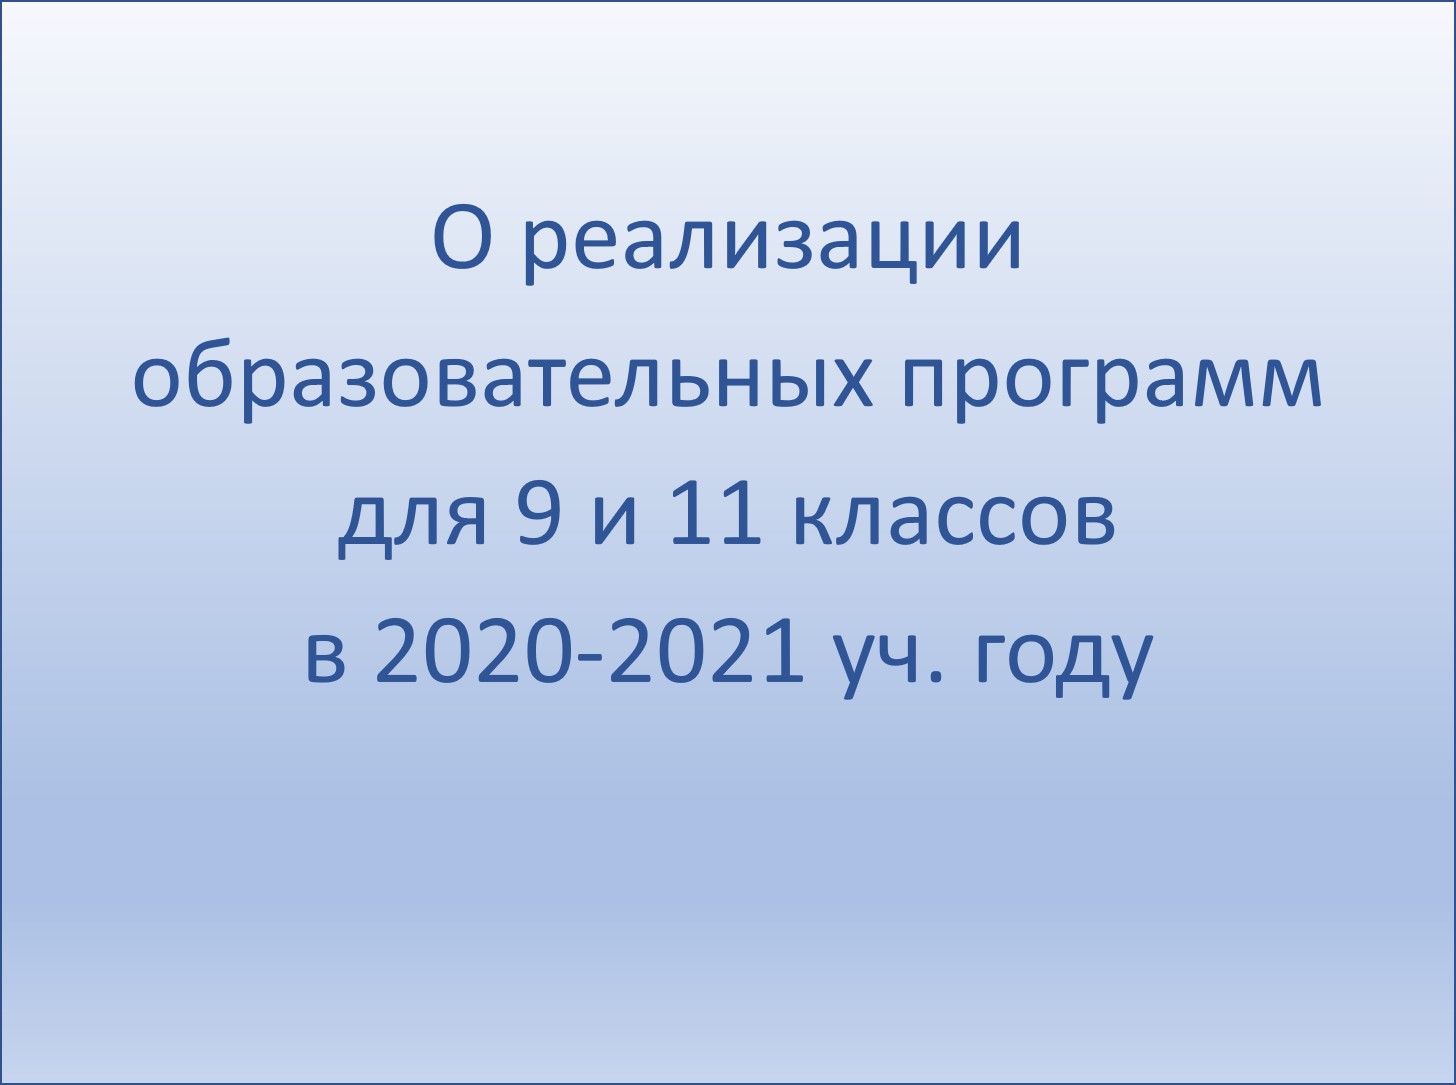 О реализации образовательных программ для 9 и 11 классов в 2020-2021 уч. году